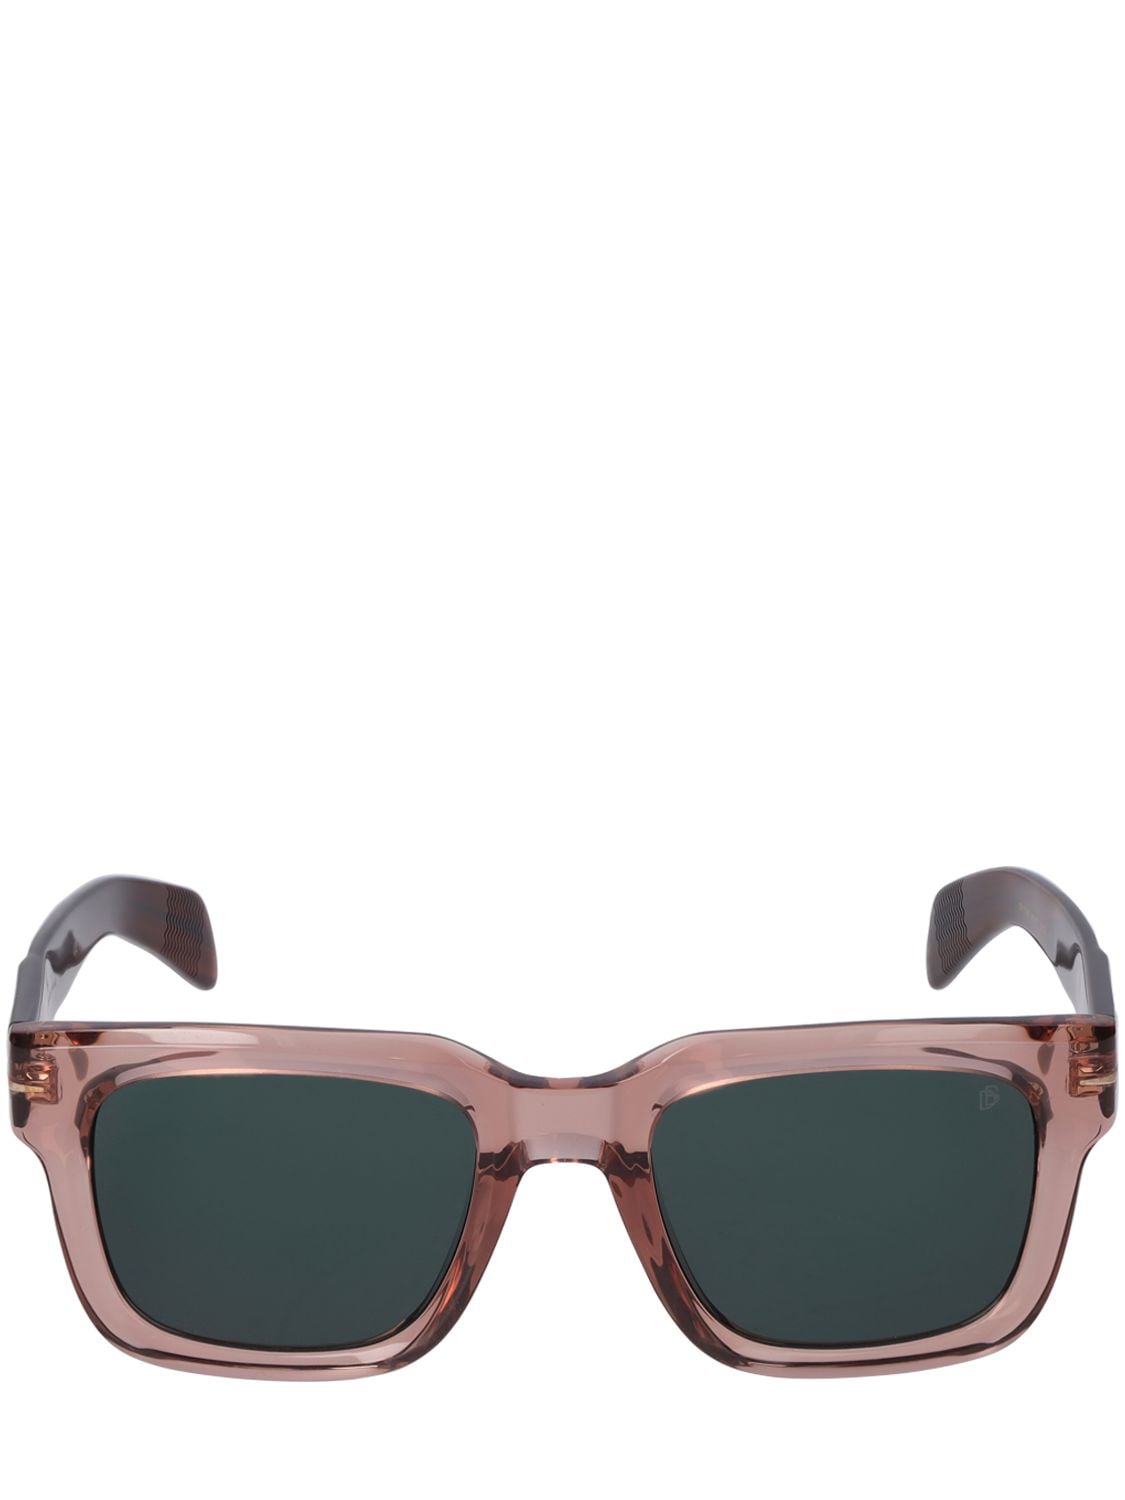 Db Eyewear By David Beckham Db Squared Acetate Sunglasses In Pink,green